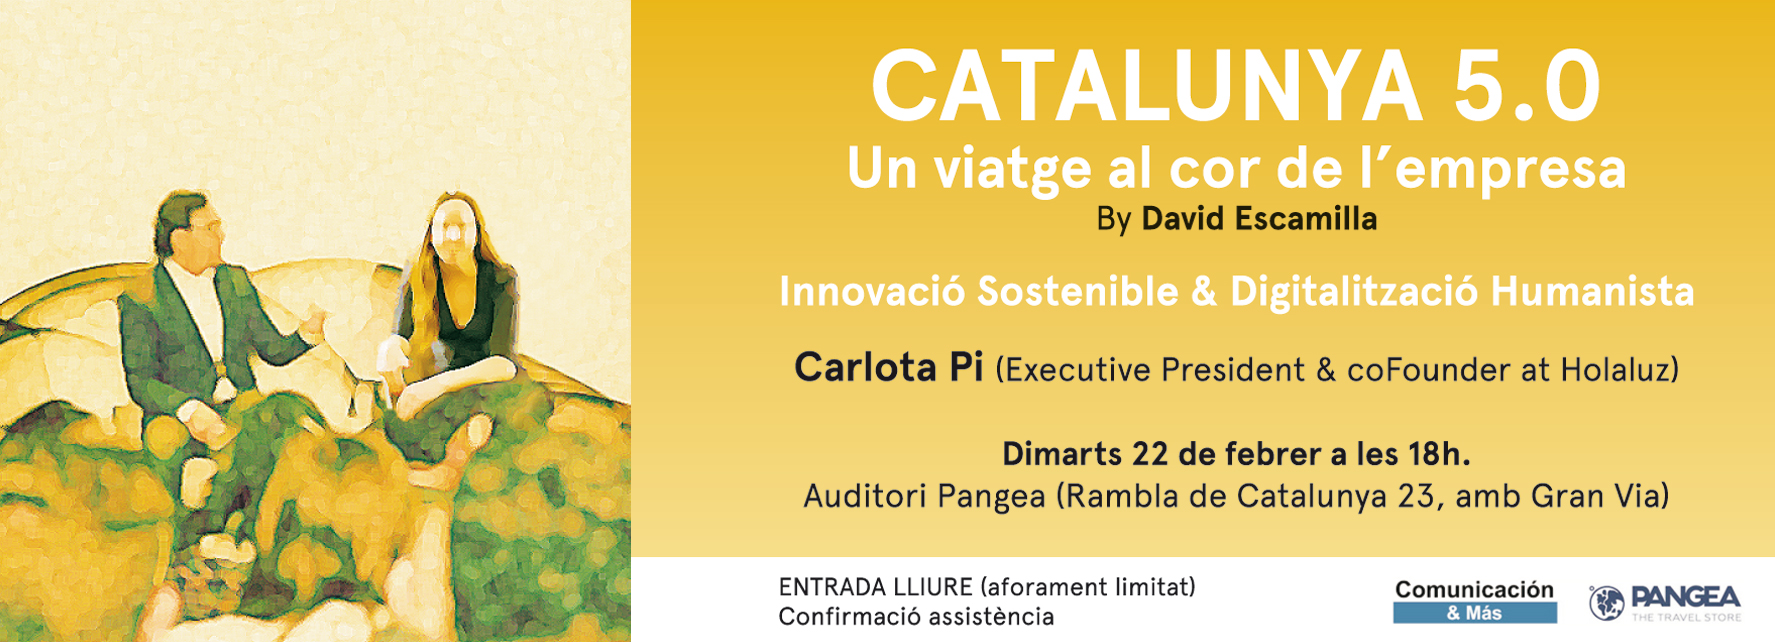 Catalunya 5.0. Un viatge al cor de l´empresa. Innovació sostenible & Digitalització Humanista amb Carlota Pi (Executive Presidente & CoFounder de Holaluz)